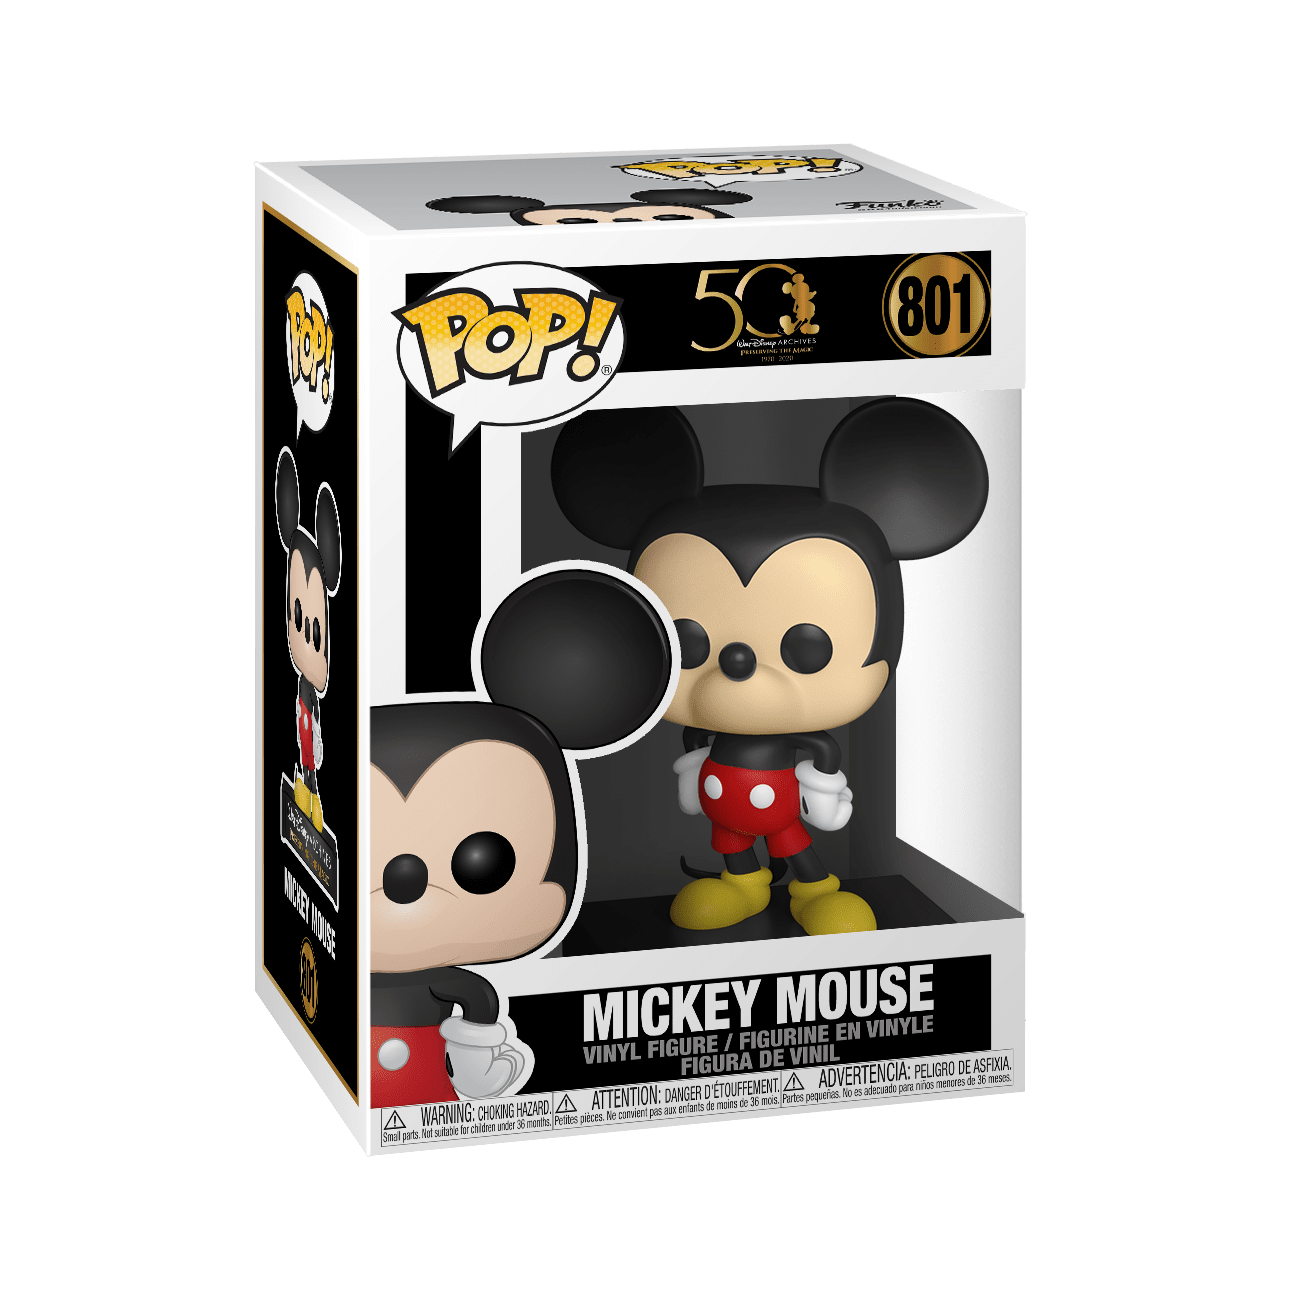 Mesterskab Tak for din hjælp tilgive Disney Archives Mickey Mouse Funko Pop! #801 - The Pop Central